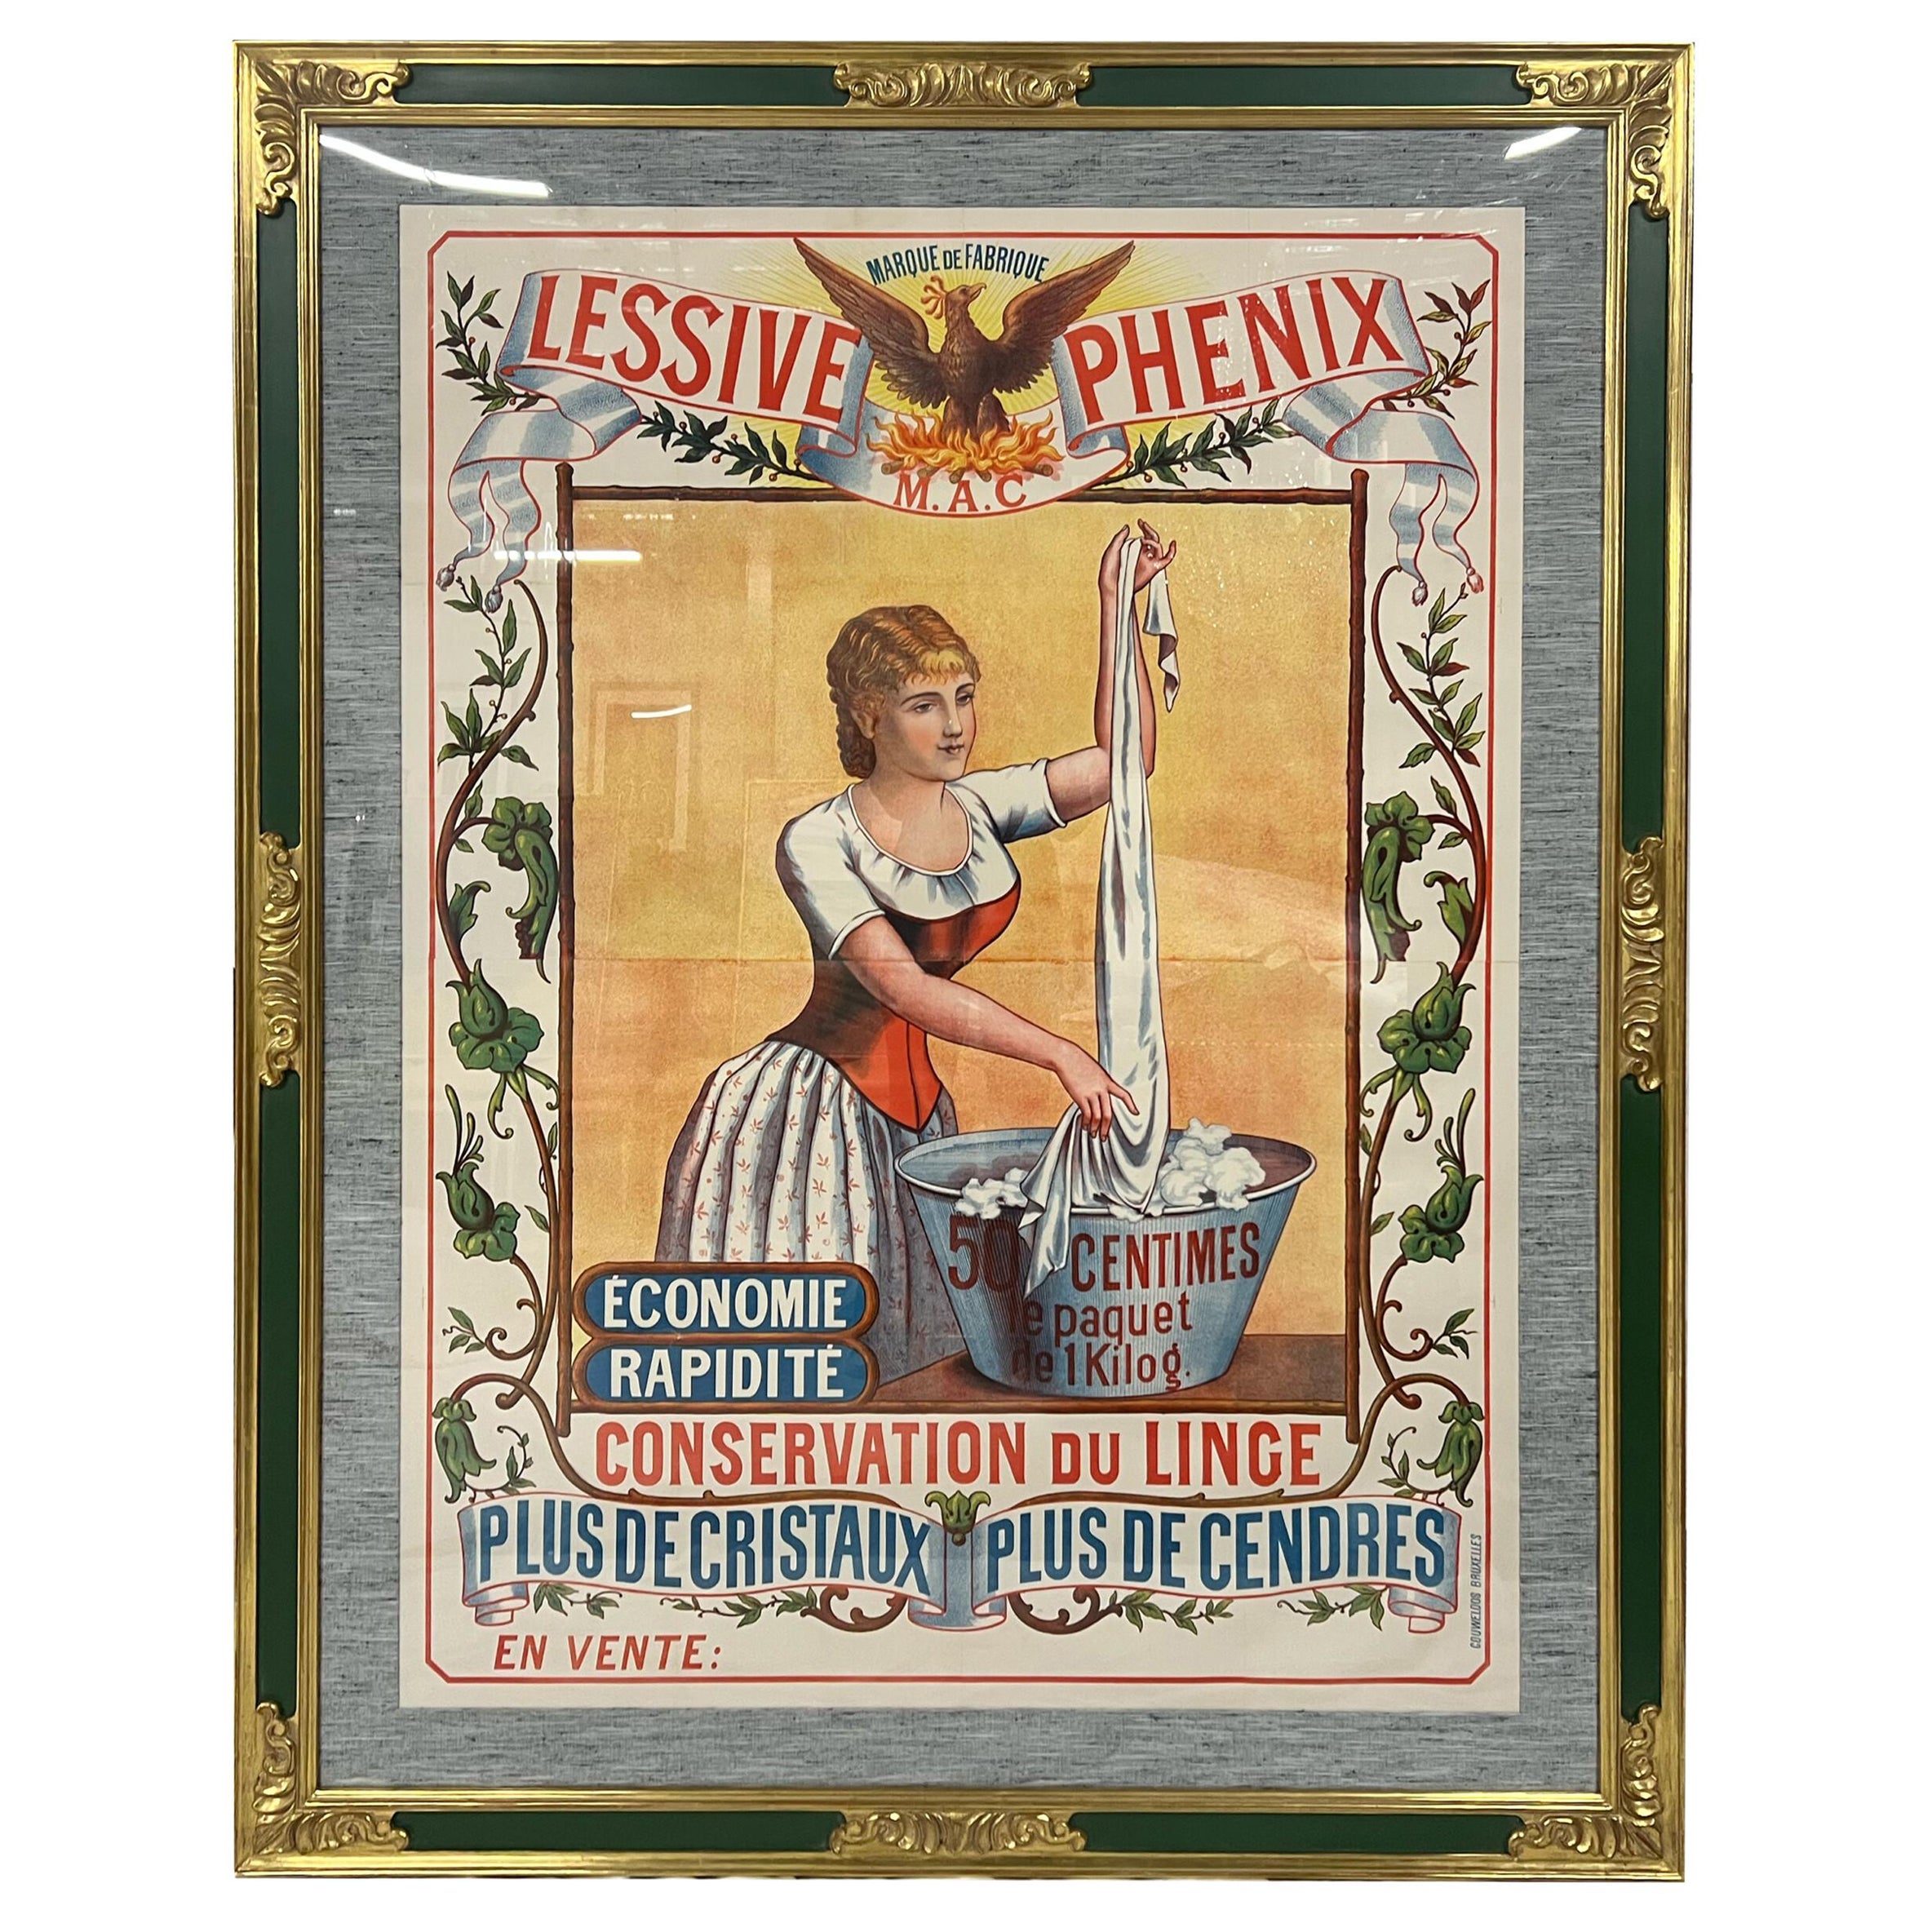 Framed, Original Vintage "Lessive Phenix" Poster